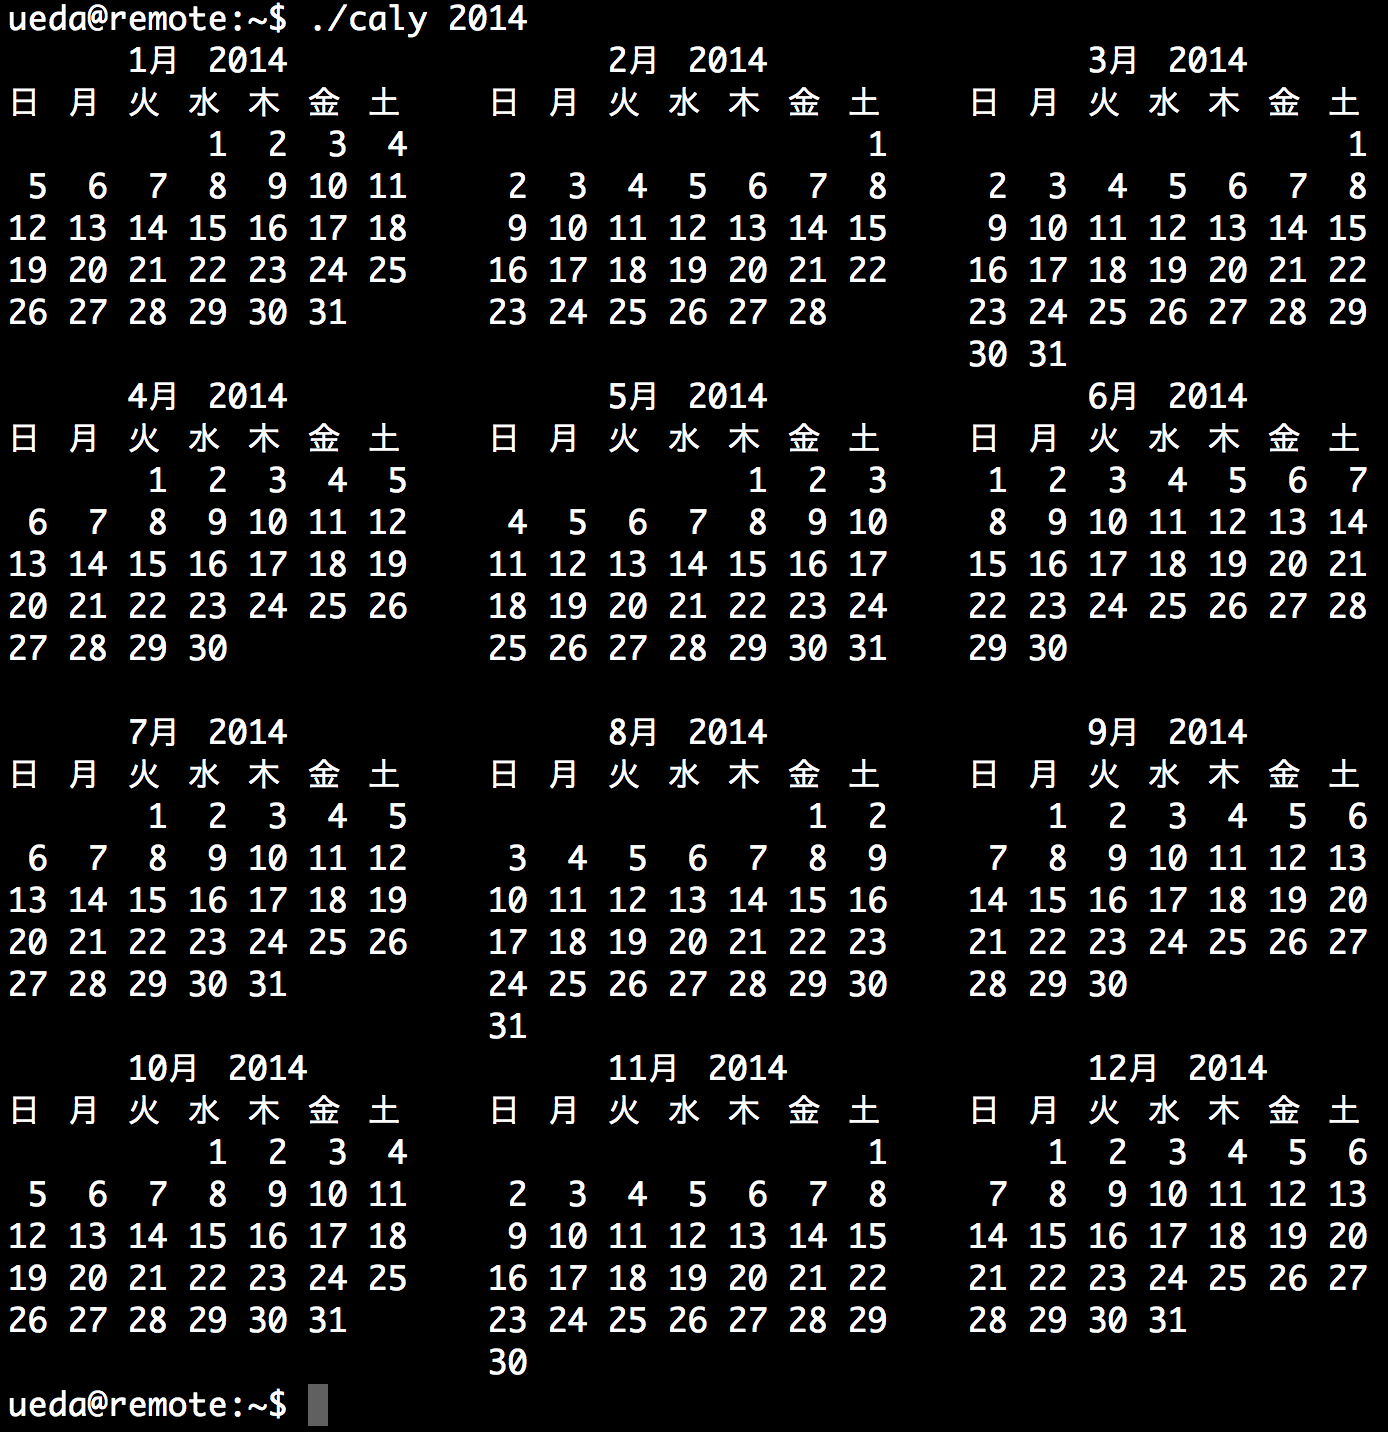 一年分のカレンダーを表示するシェルスクリプト 上田隆一の仕事とか